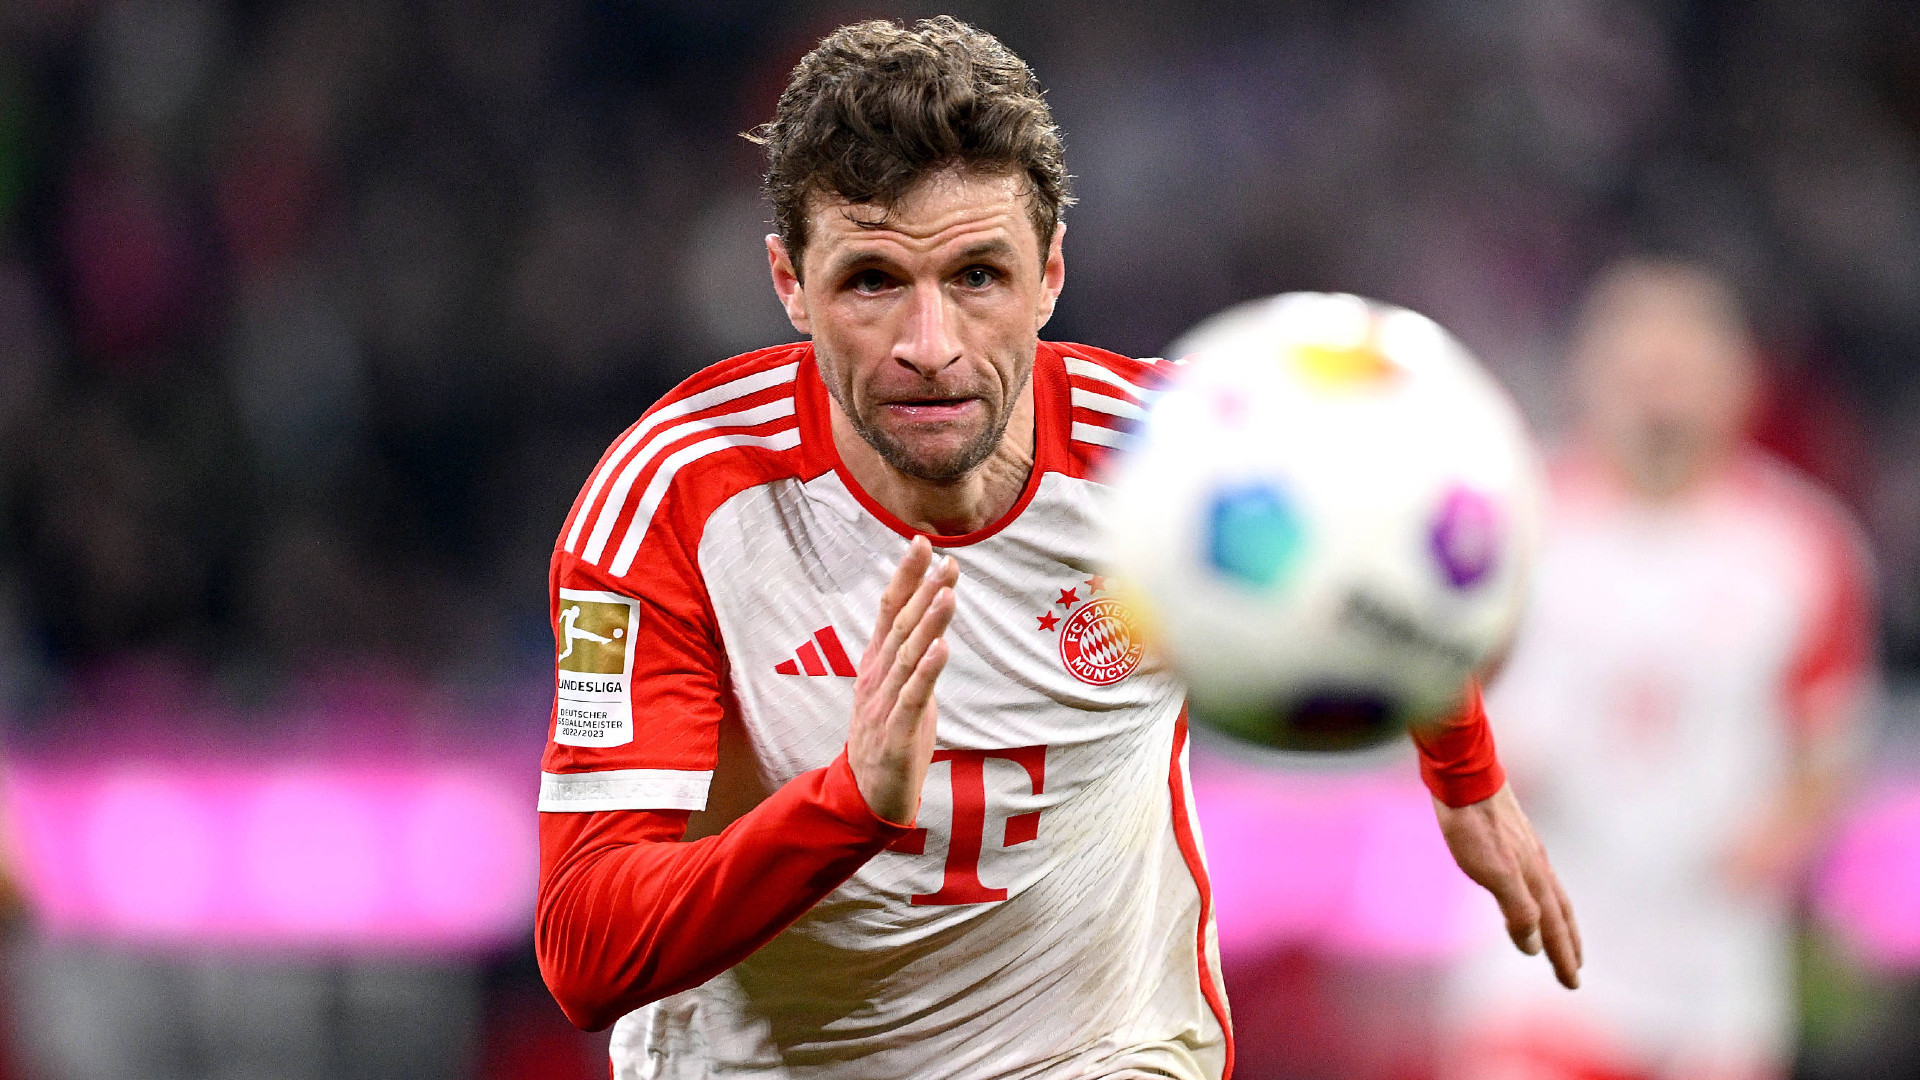 Stammtisch hoch 14": Aleksandar Pavlovic glänzt beim FC Bayern München - doch Thomas Müller mahnt